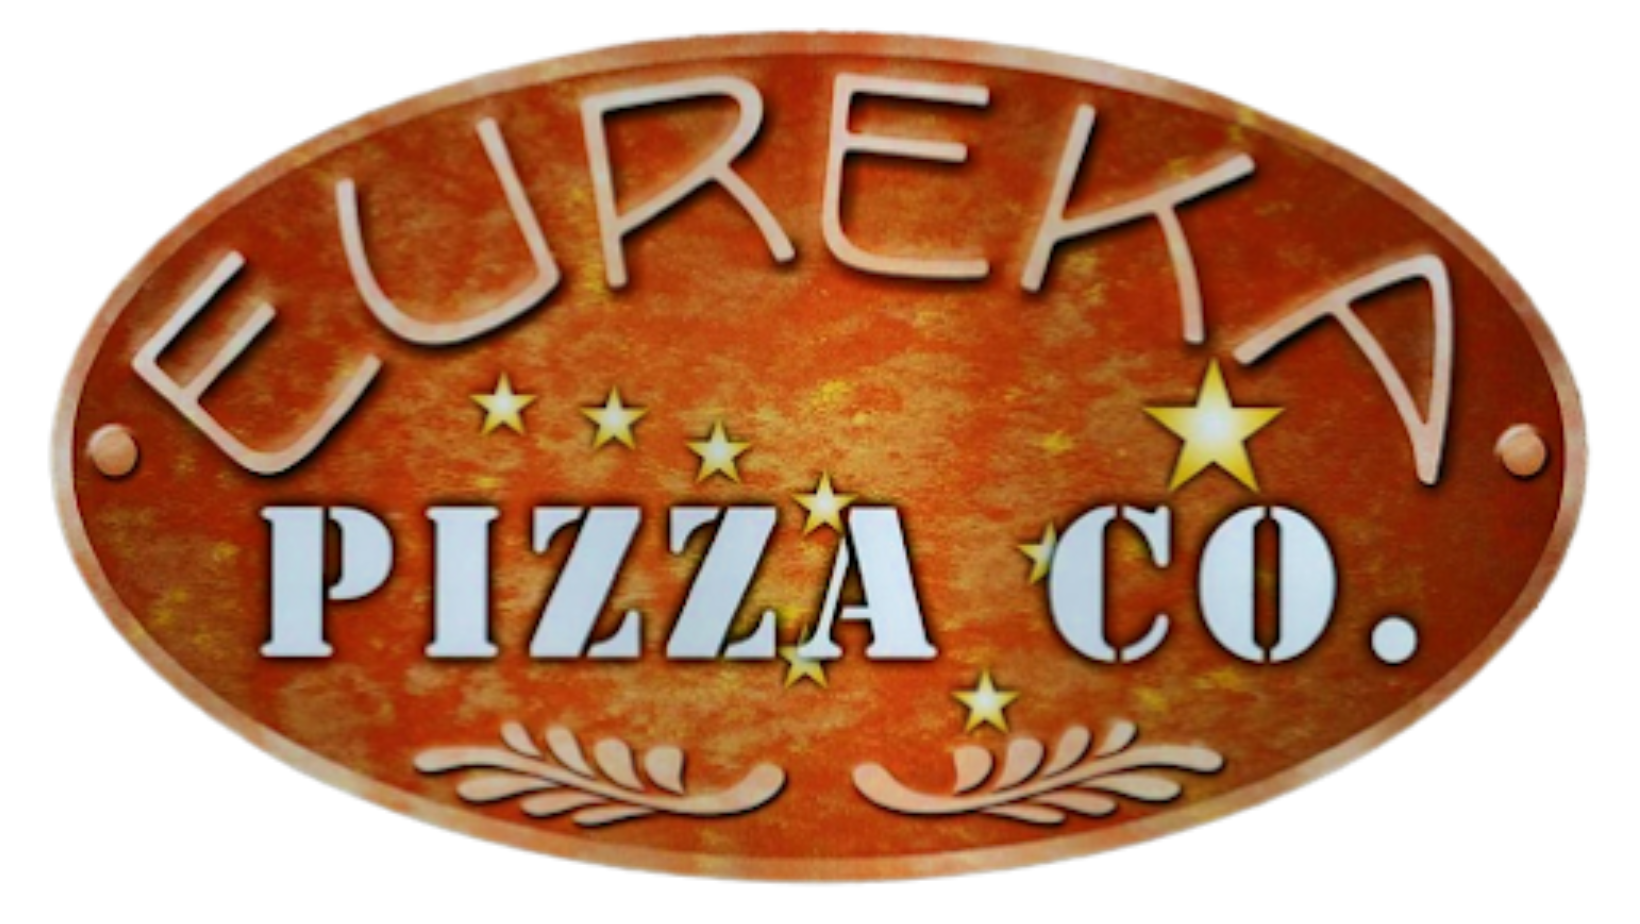 Eureka Pizza Co.